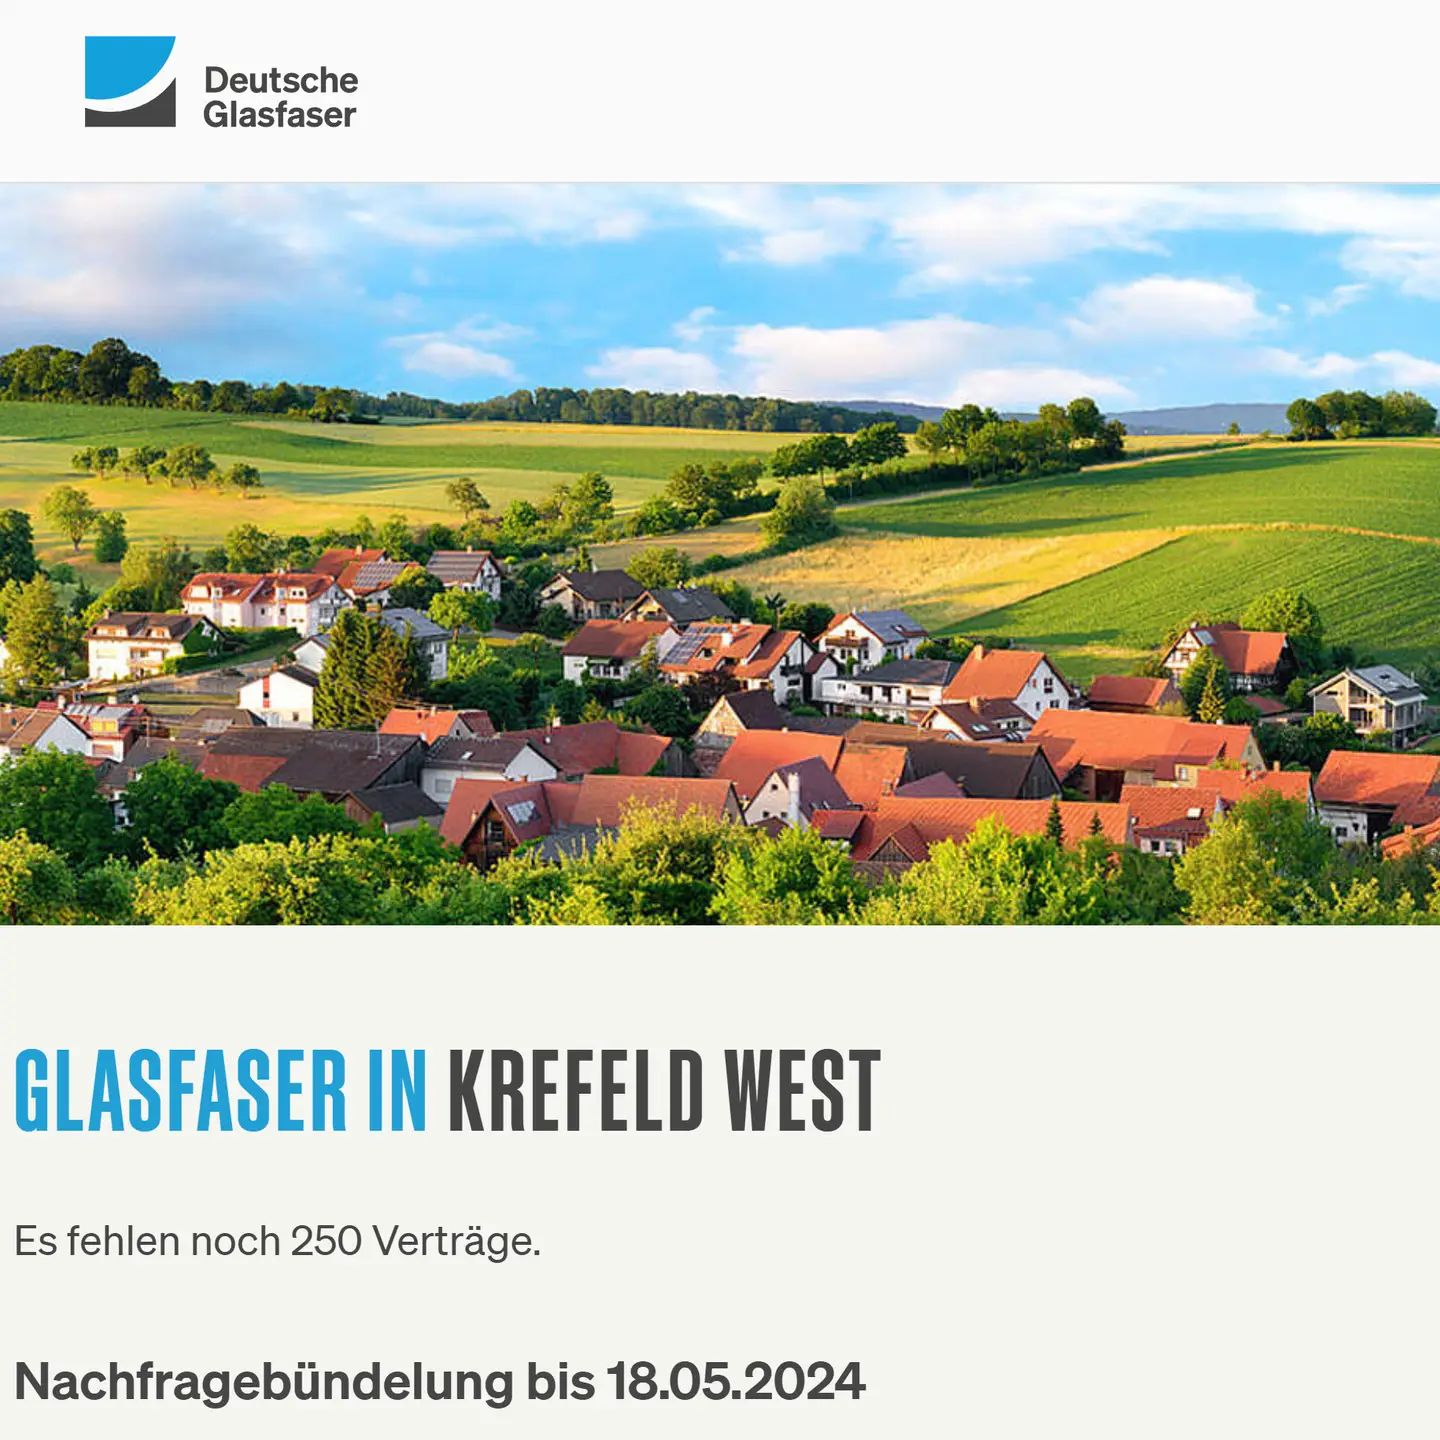 Screenshot von "Deutsche Glasfaser", oben DG Logo, ein Landschaftsbild, Schriftzüge "Glasfaser in Krefeld-West", Nachfragebündelung bis 18.5.2024, Anzeige des aktuellen Stand: Es fehlen noch 250 Anträge 